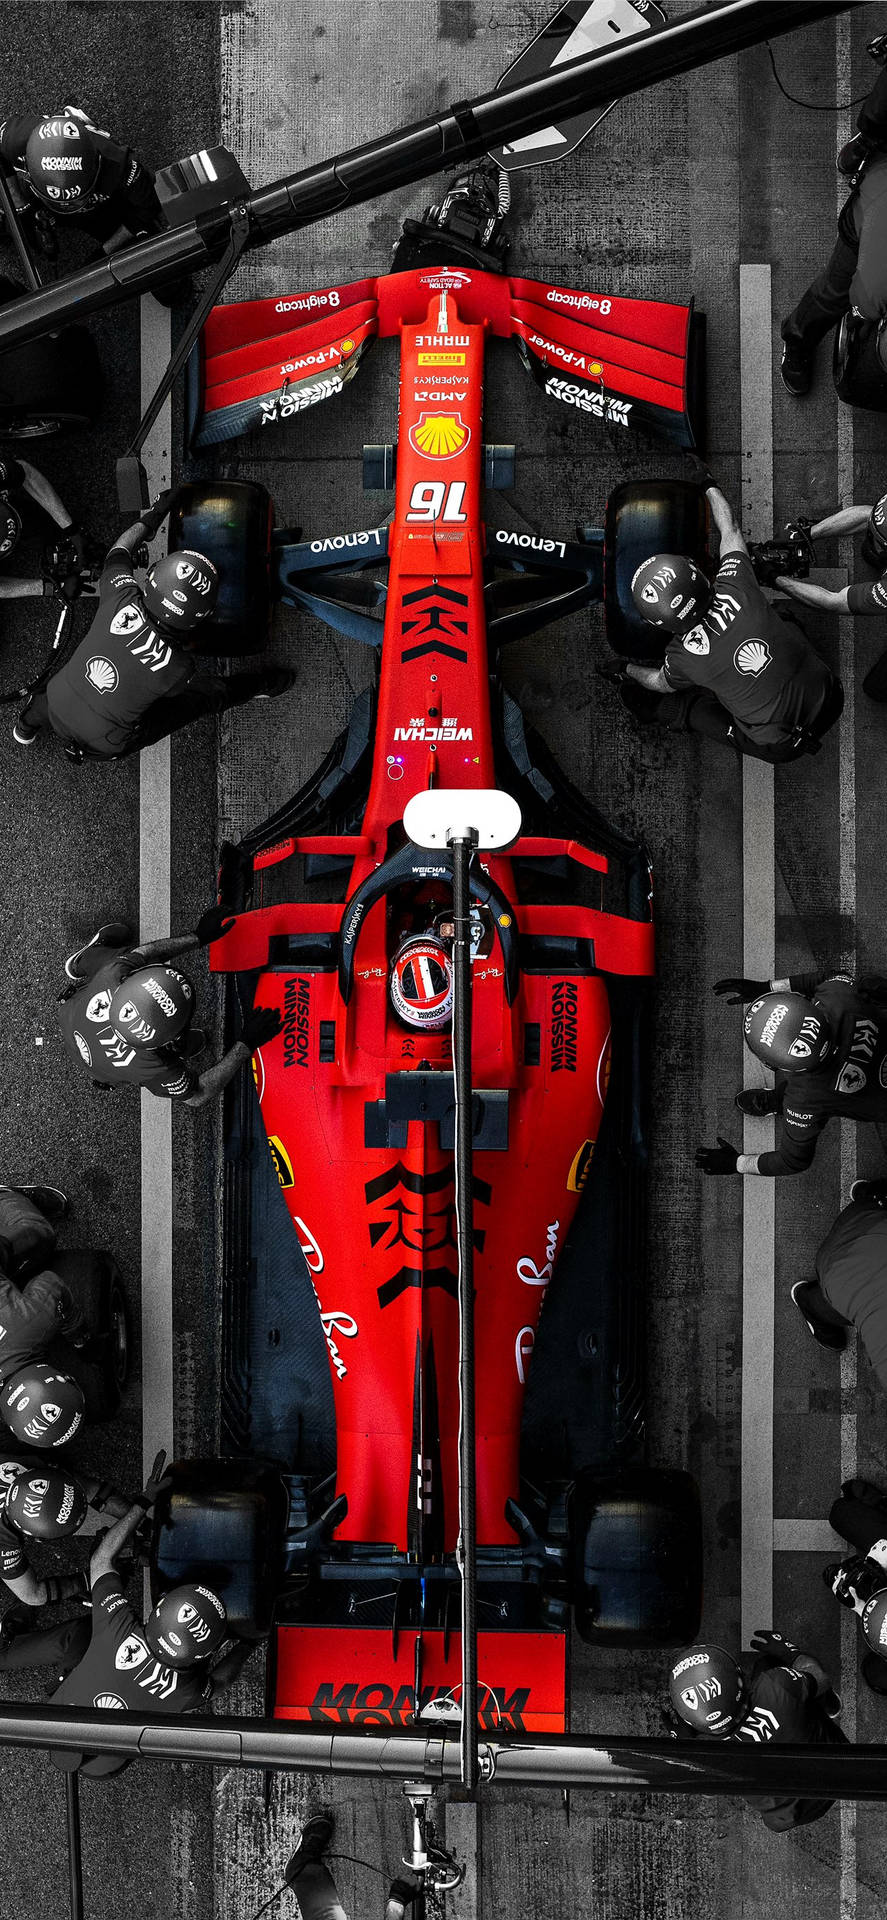 A Red Ferrari Racing Car Wallpaper